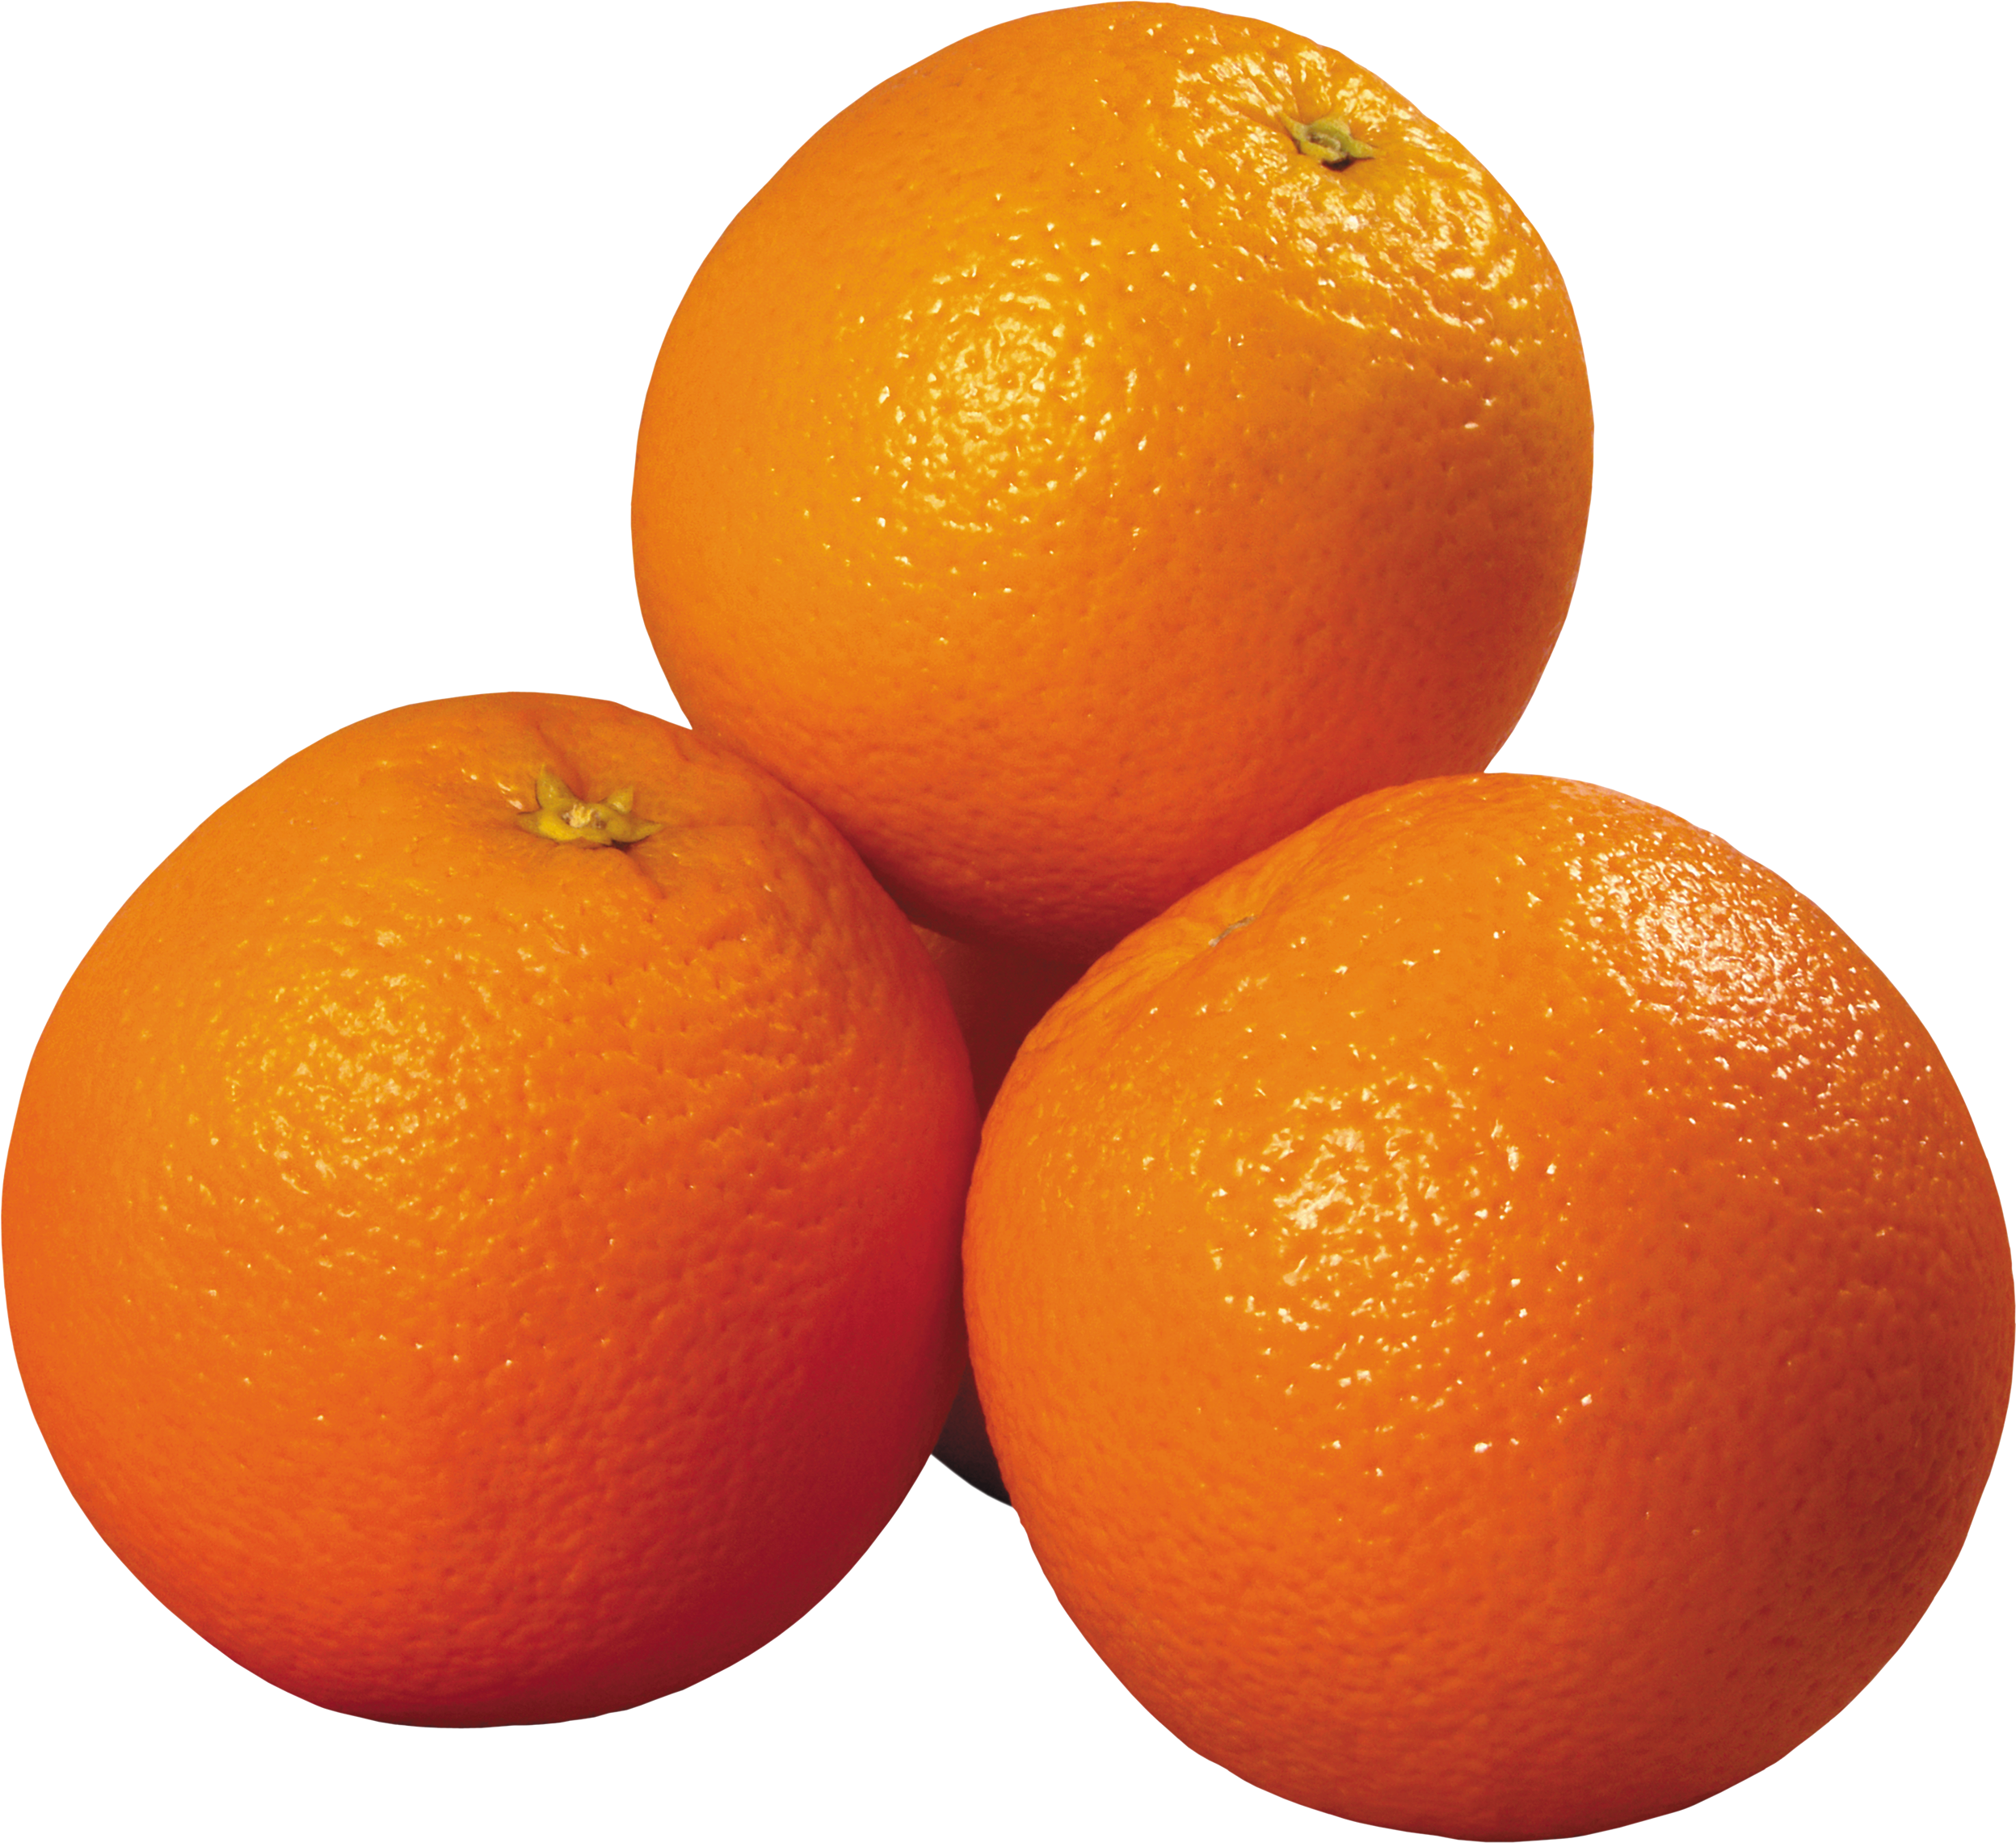 Кк апельсина. Оранжевый мандарин. Apelsin 1:1. Апельсин на белом фоне. Апельсинтна белом фоне.